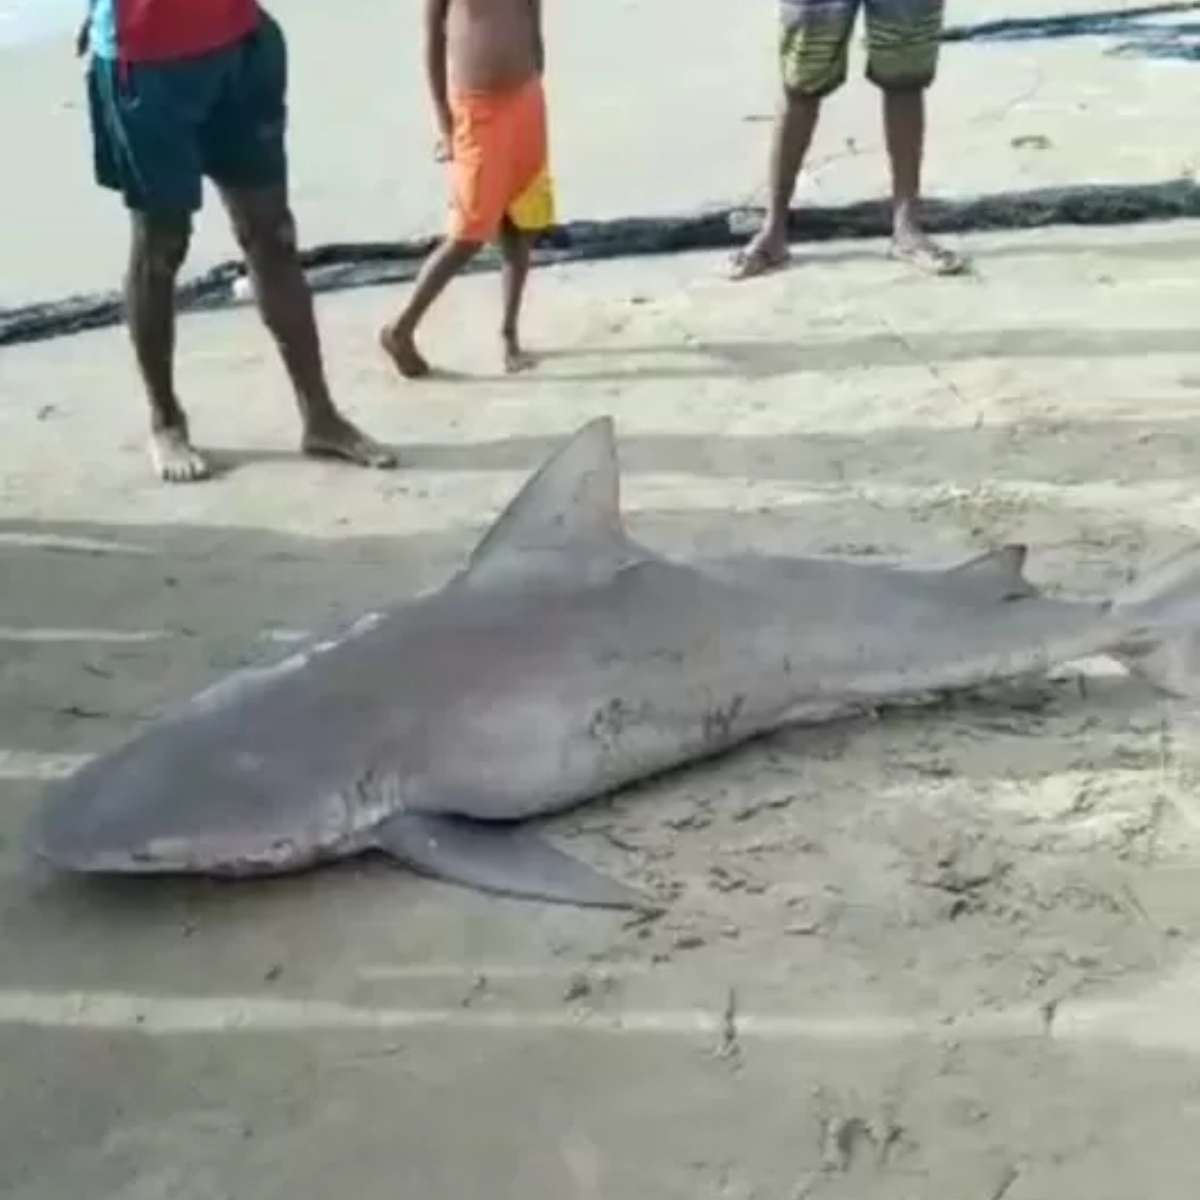 Homem que pescou tubarão em risco de extinção em Fortaleza vai